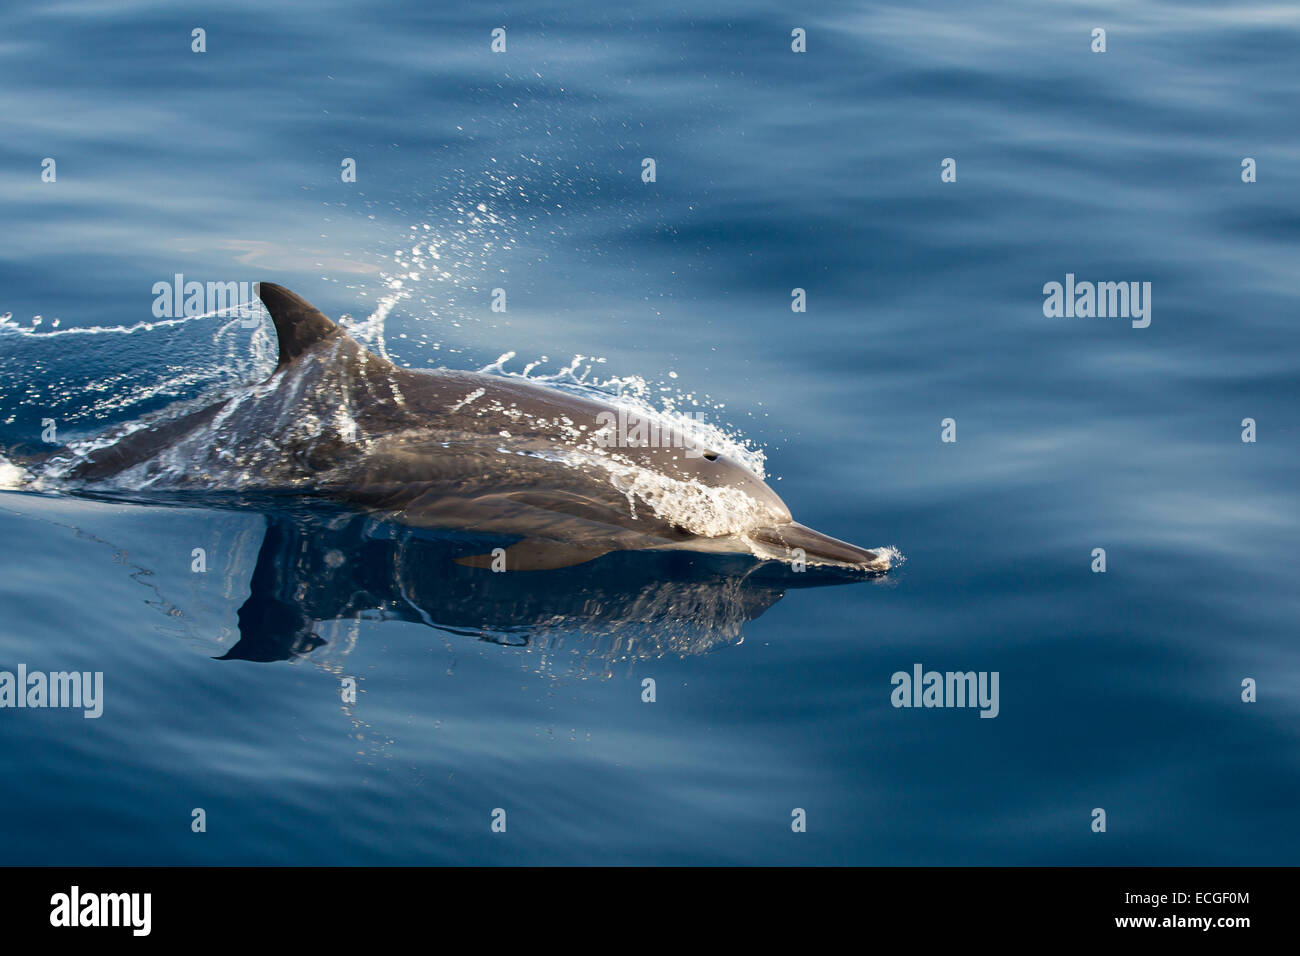 Spinner Dolphin, Ostpazifischer Delfin, Stenella longirostris, surfacing, Indonesia Stock Photo